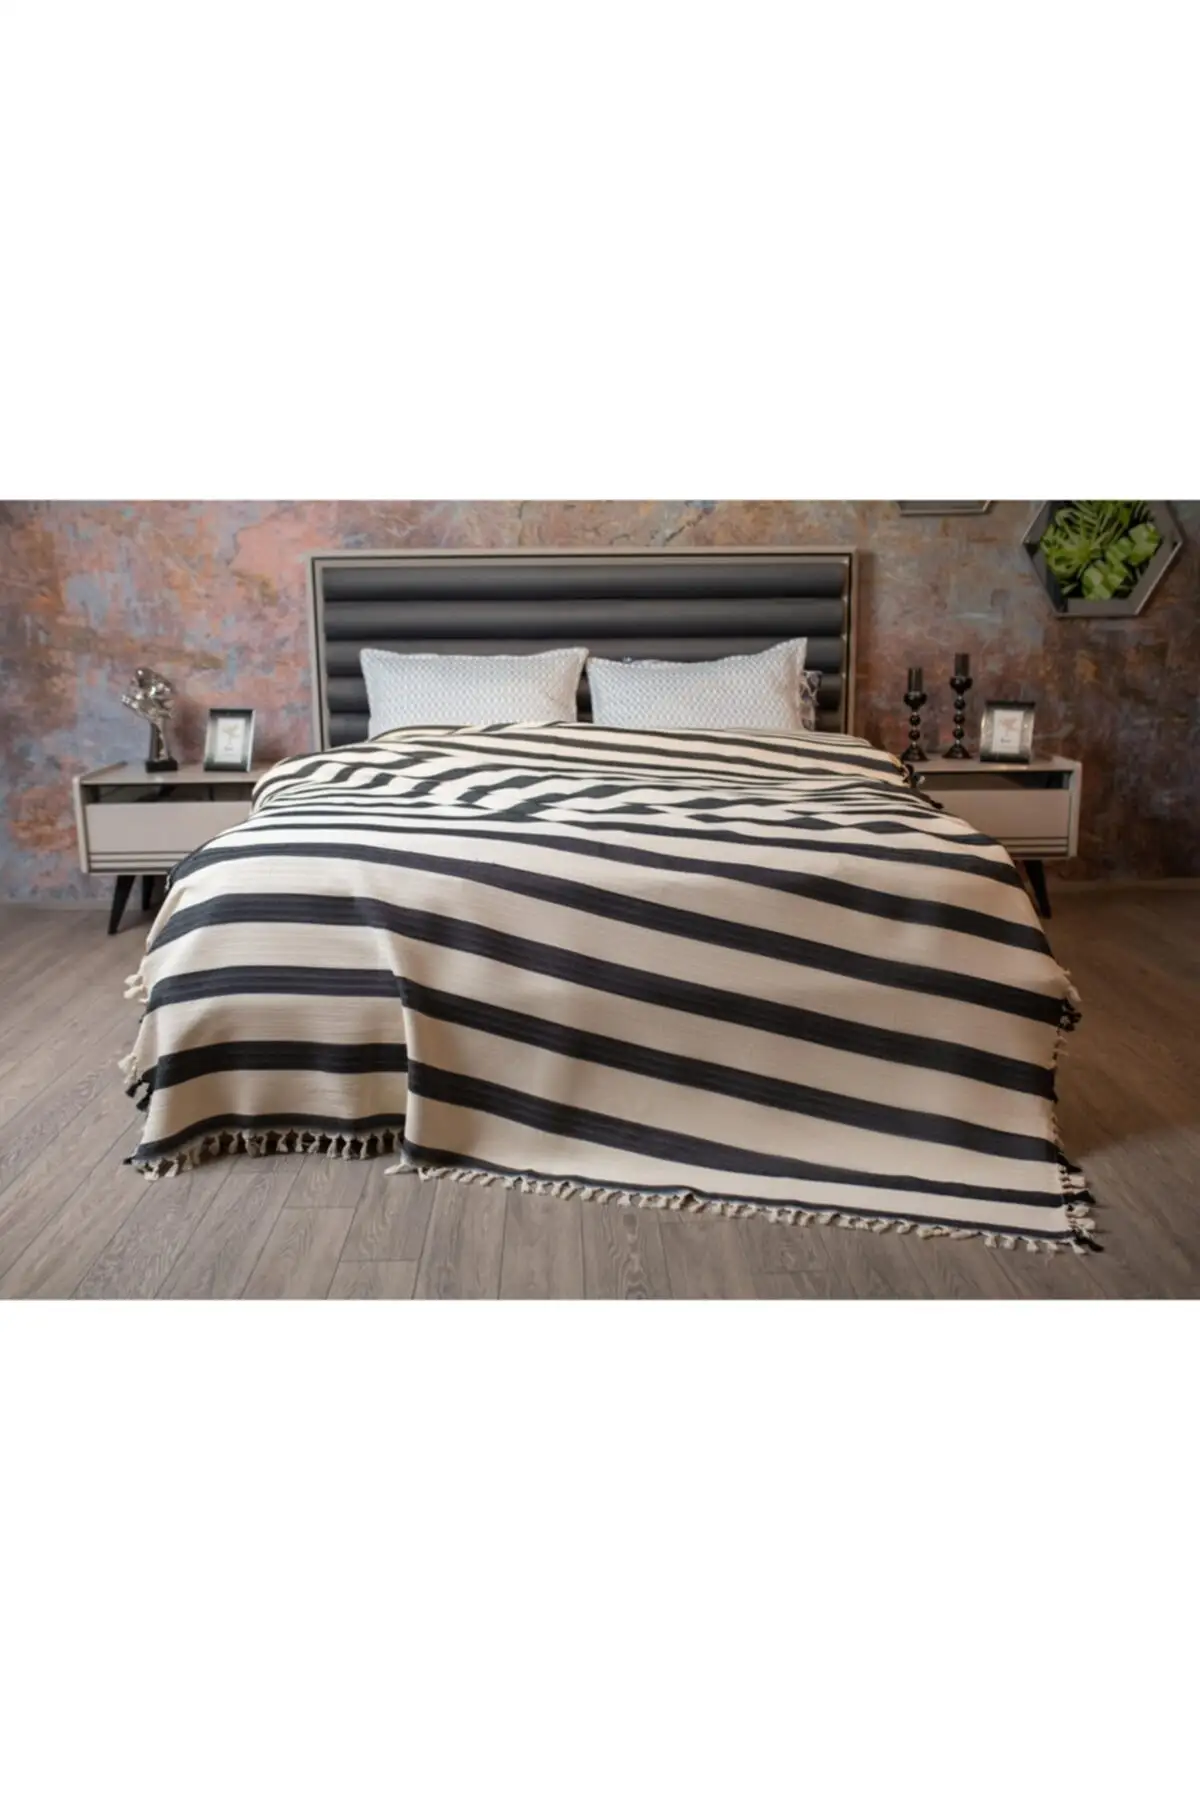 

100% Cotton Double Beijing Bed Linen 220x240 Multi-Color Battal Boy Room Textile Without Cotton Sheets Home &